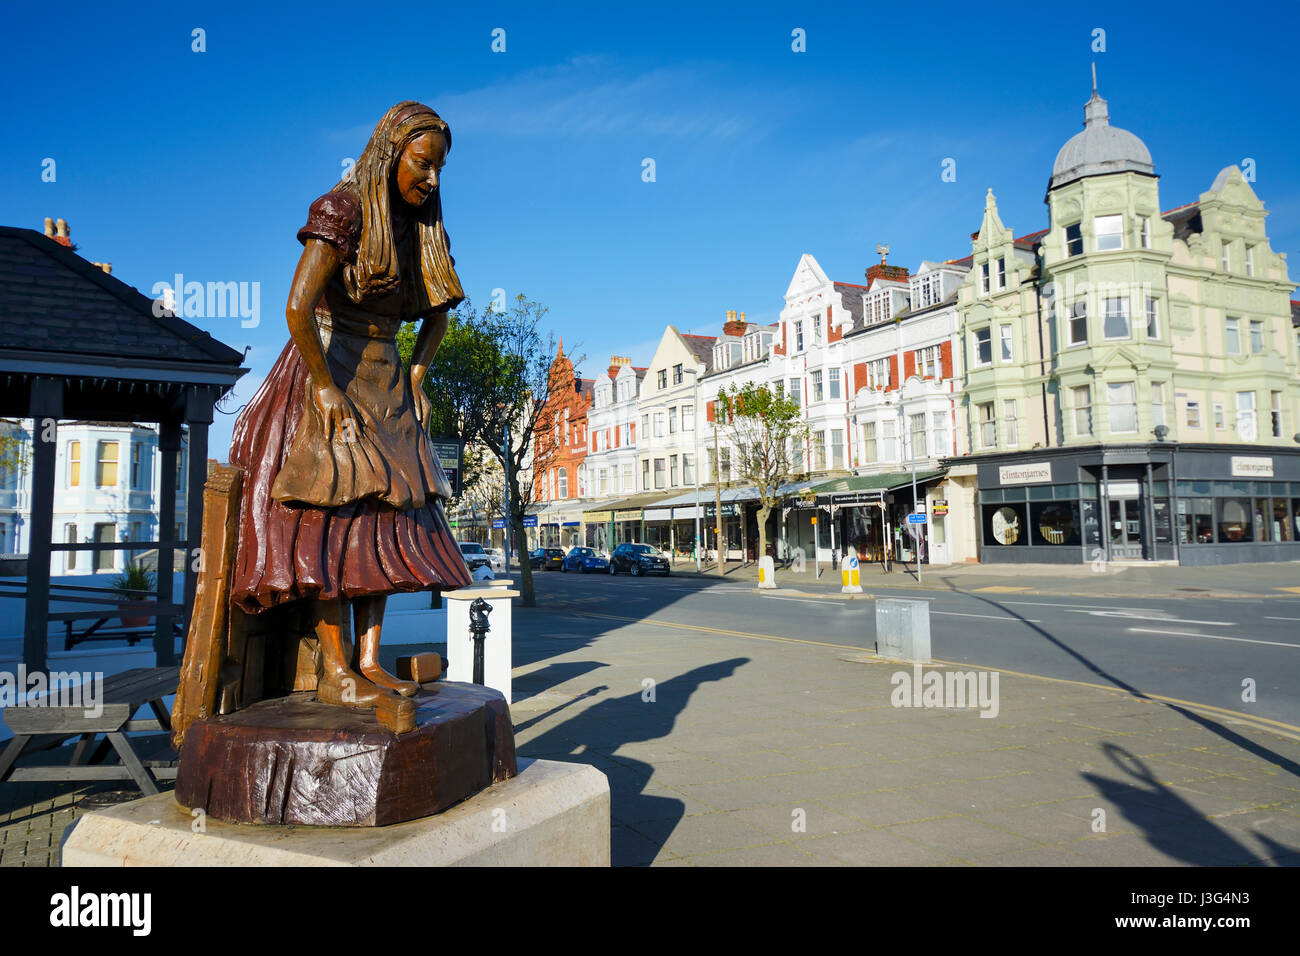 Alice im Wunderland geschnitzte Holzfigur in Llandudno Hervorhebung die Verbindung der Stadt mit Alice Pleasance Liddell, Alice im Wonderlan Stockfoto